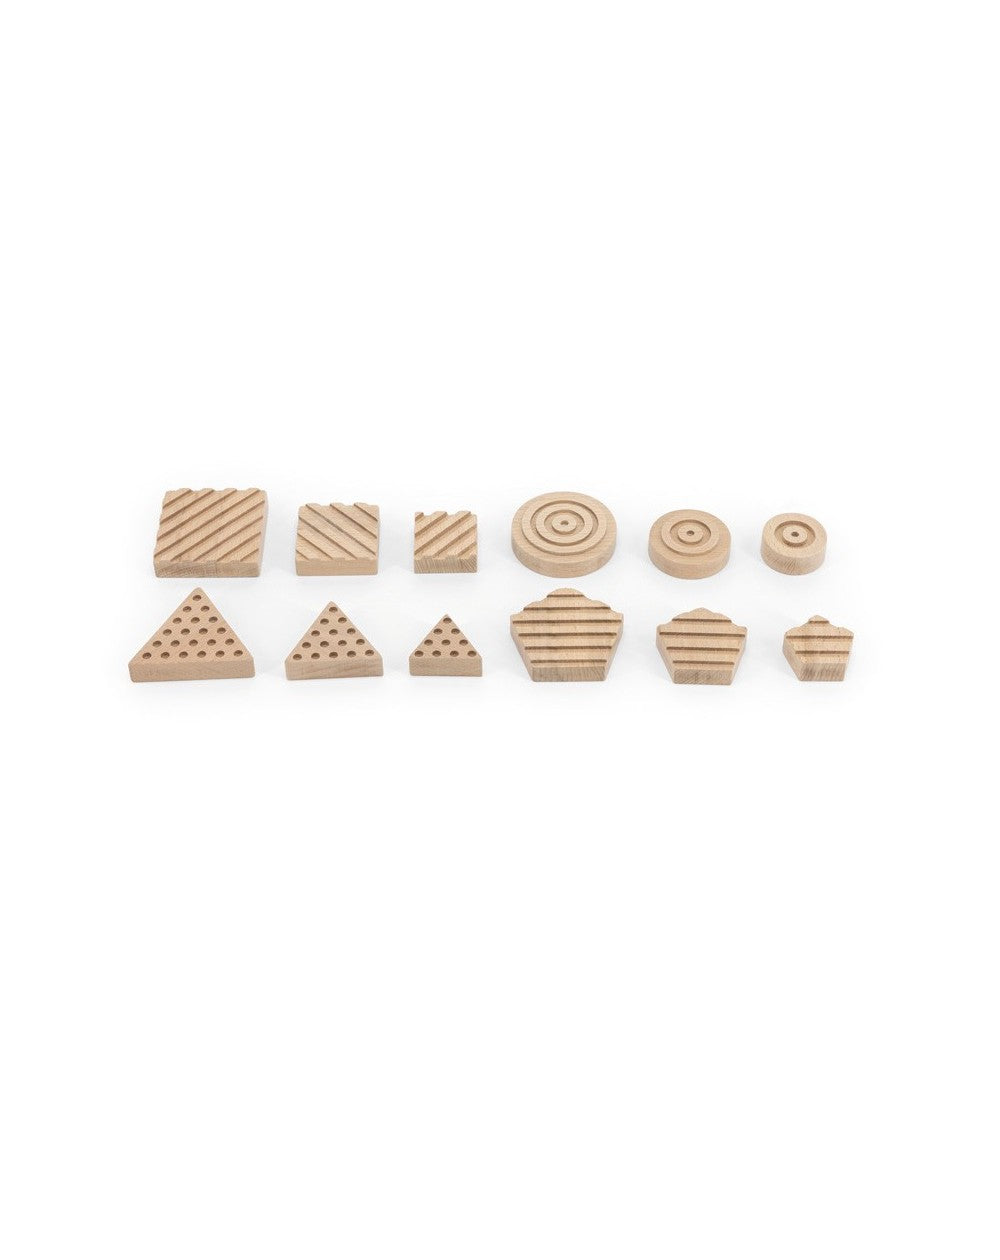 Houten zintuigen puzzel geometrische vormen - puzzle en bois sensorielle les formes géométriques